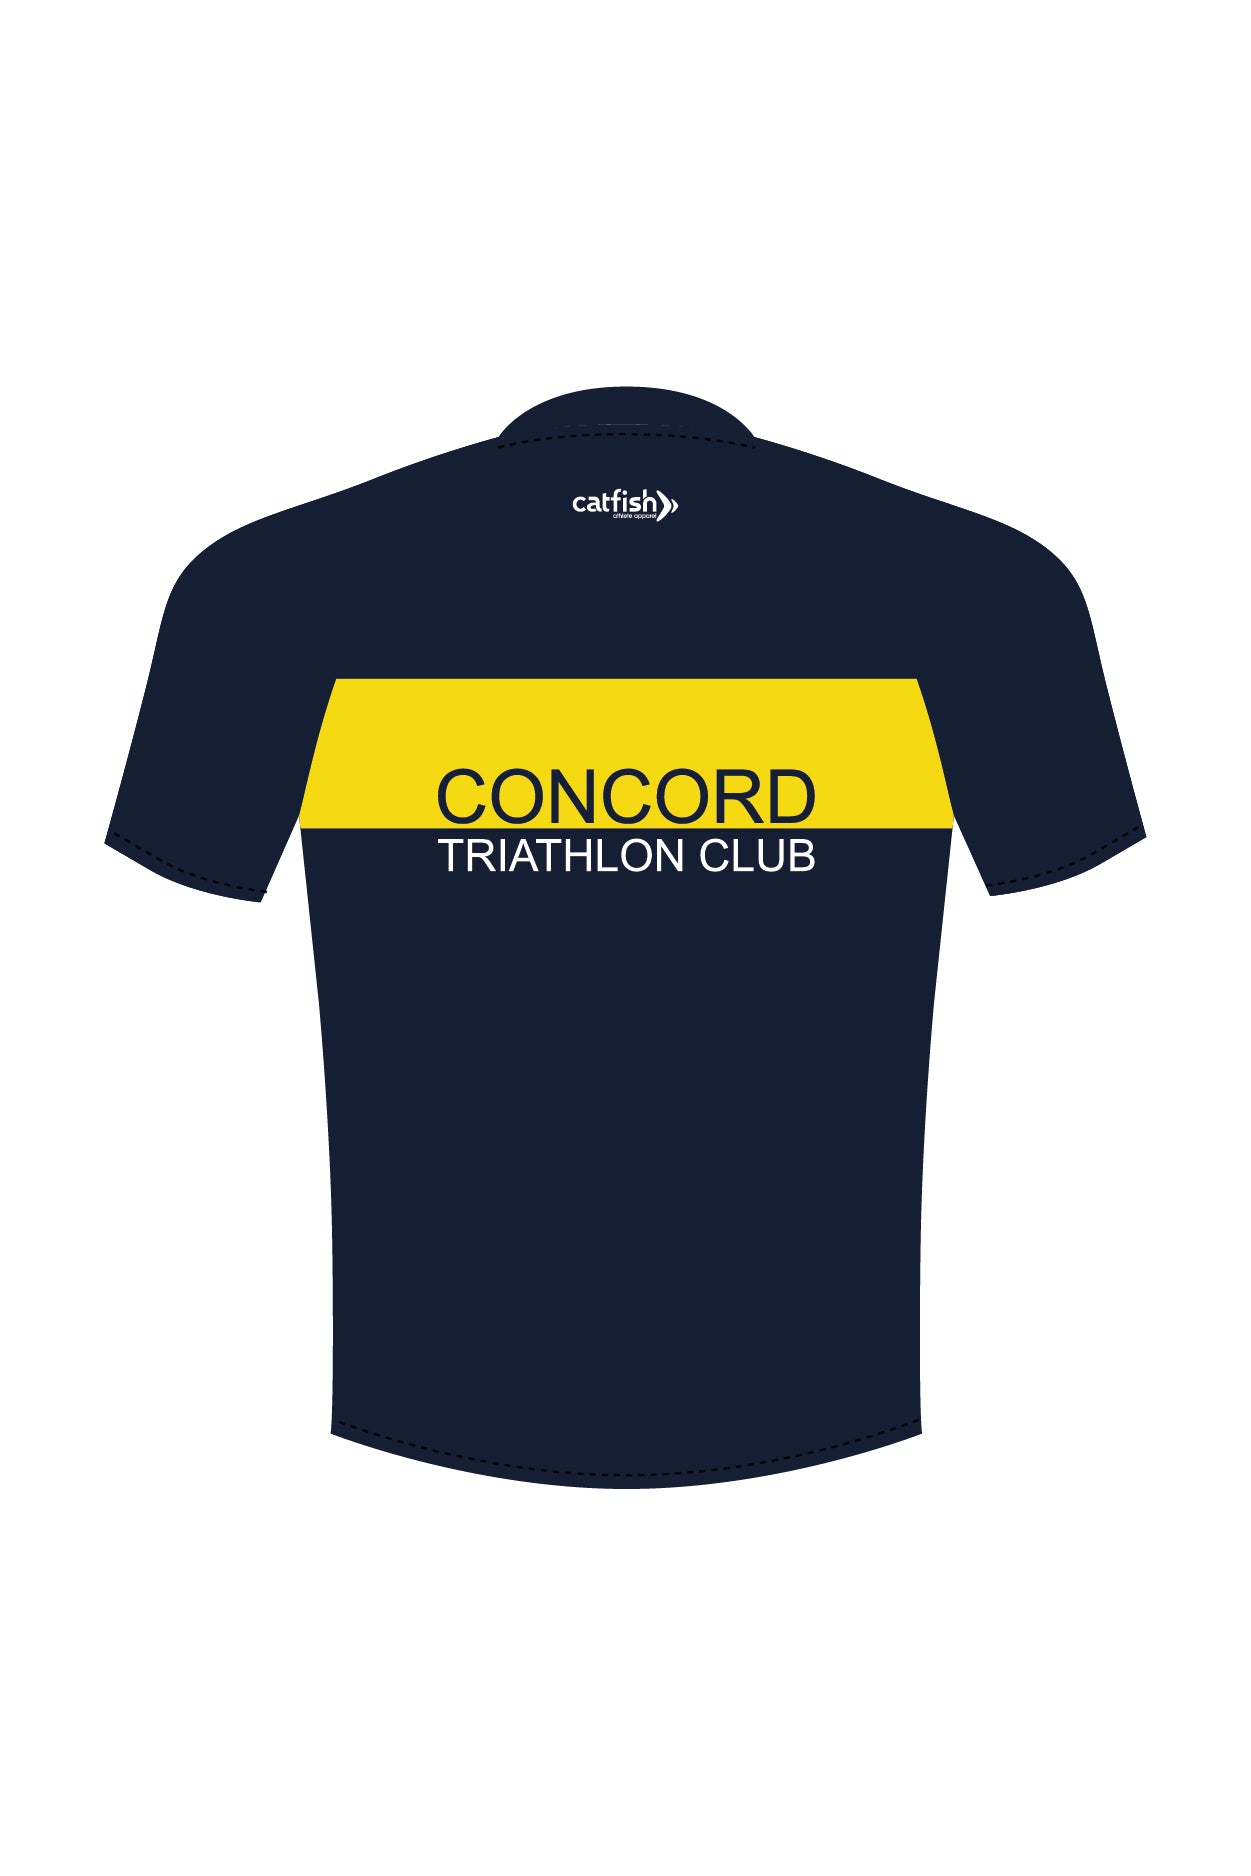 Concord Tri Club Women's Run Tee